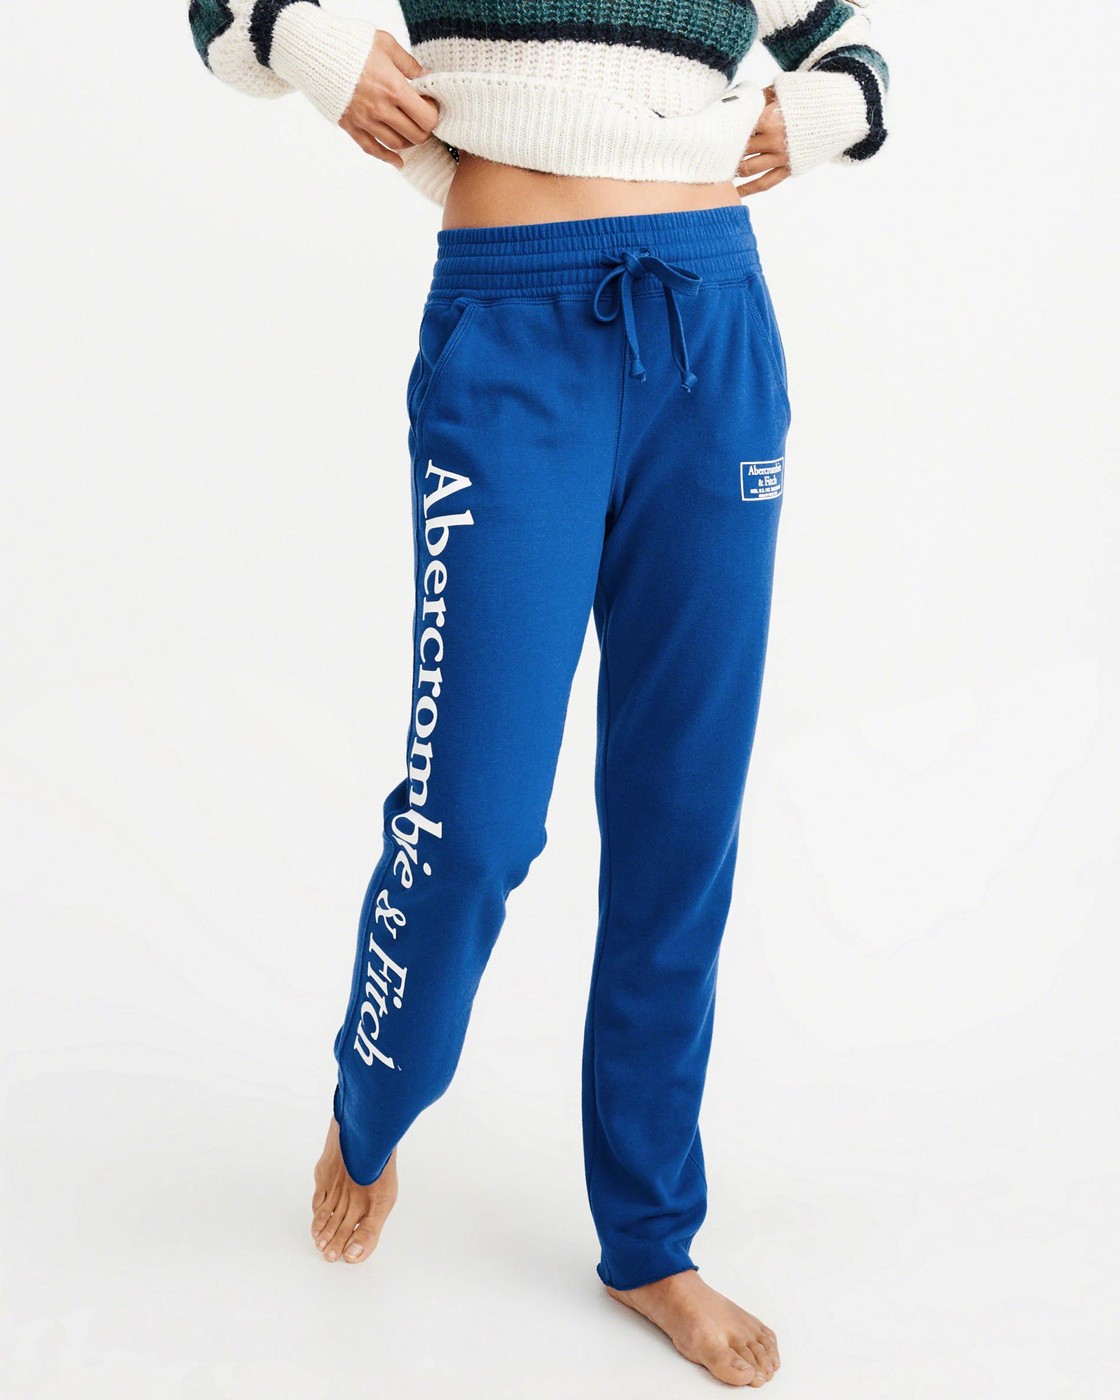 Спортивные штаны - женские спортивные штаны Abercrombie & Fitch